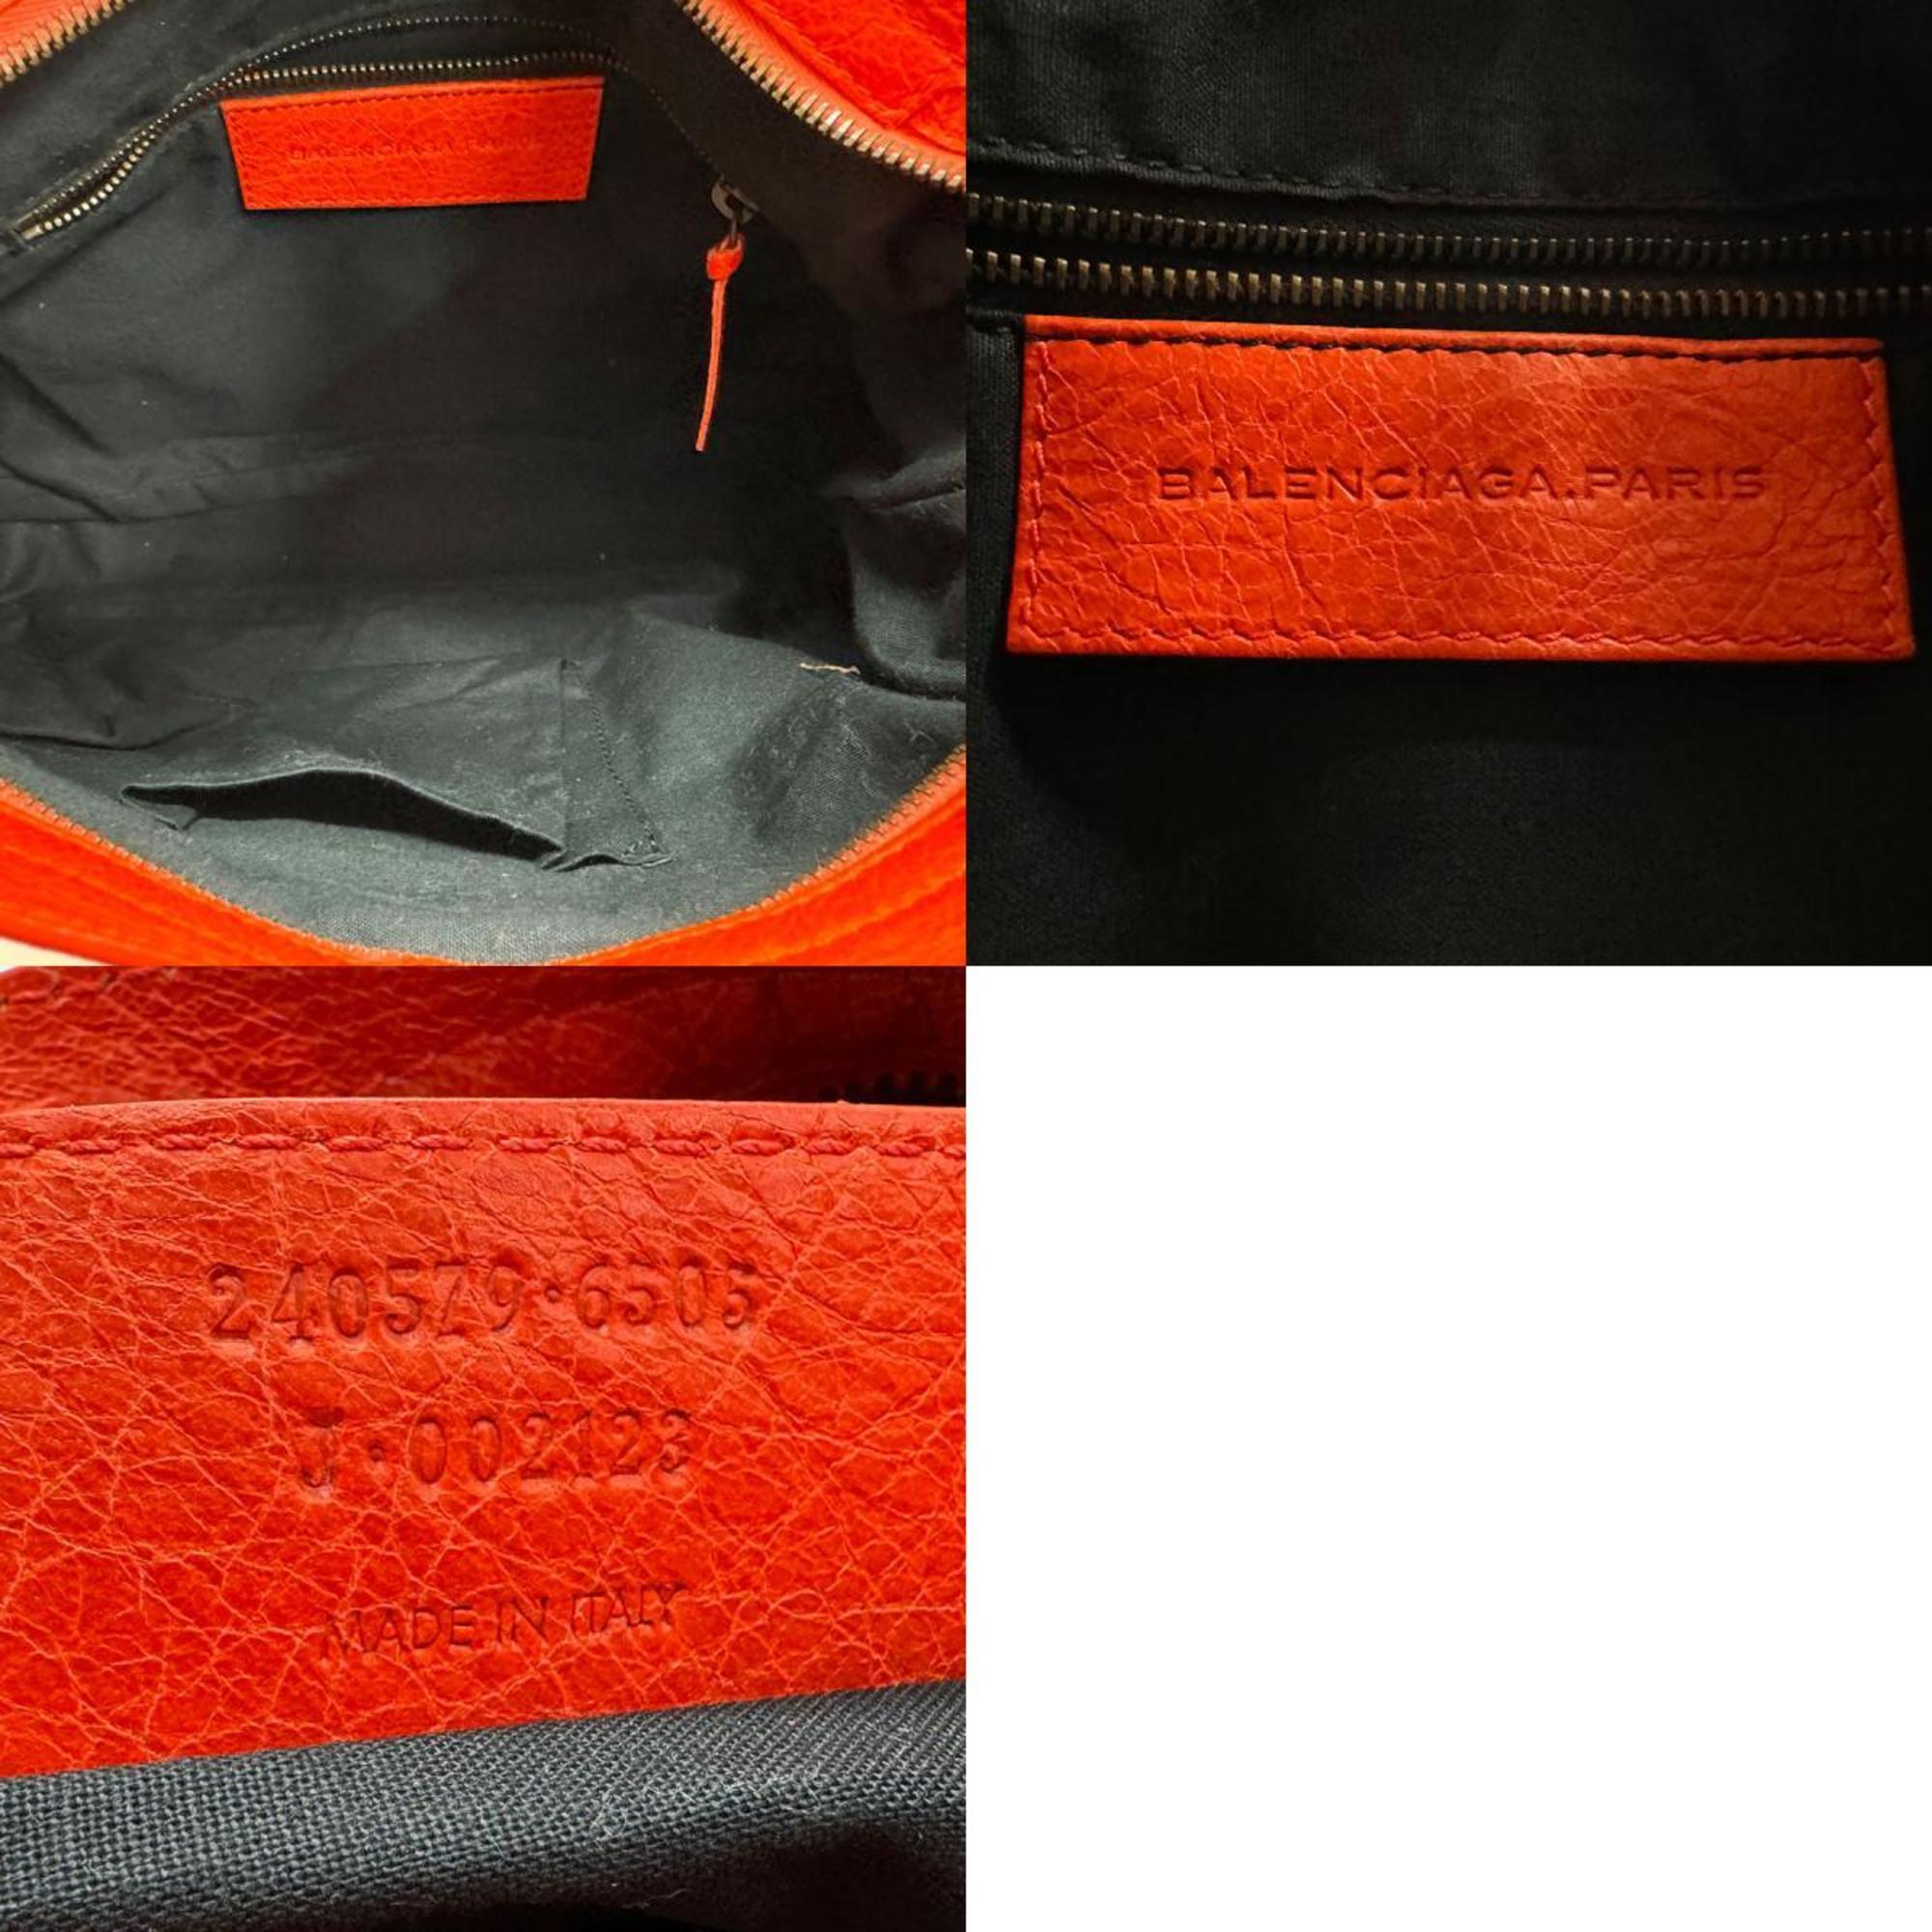 BALENCIAGA Shoulder Bag Handbag The Town Leather Red Women's 240579 z1569